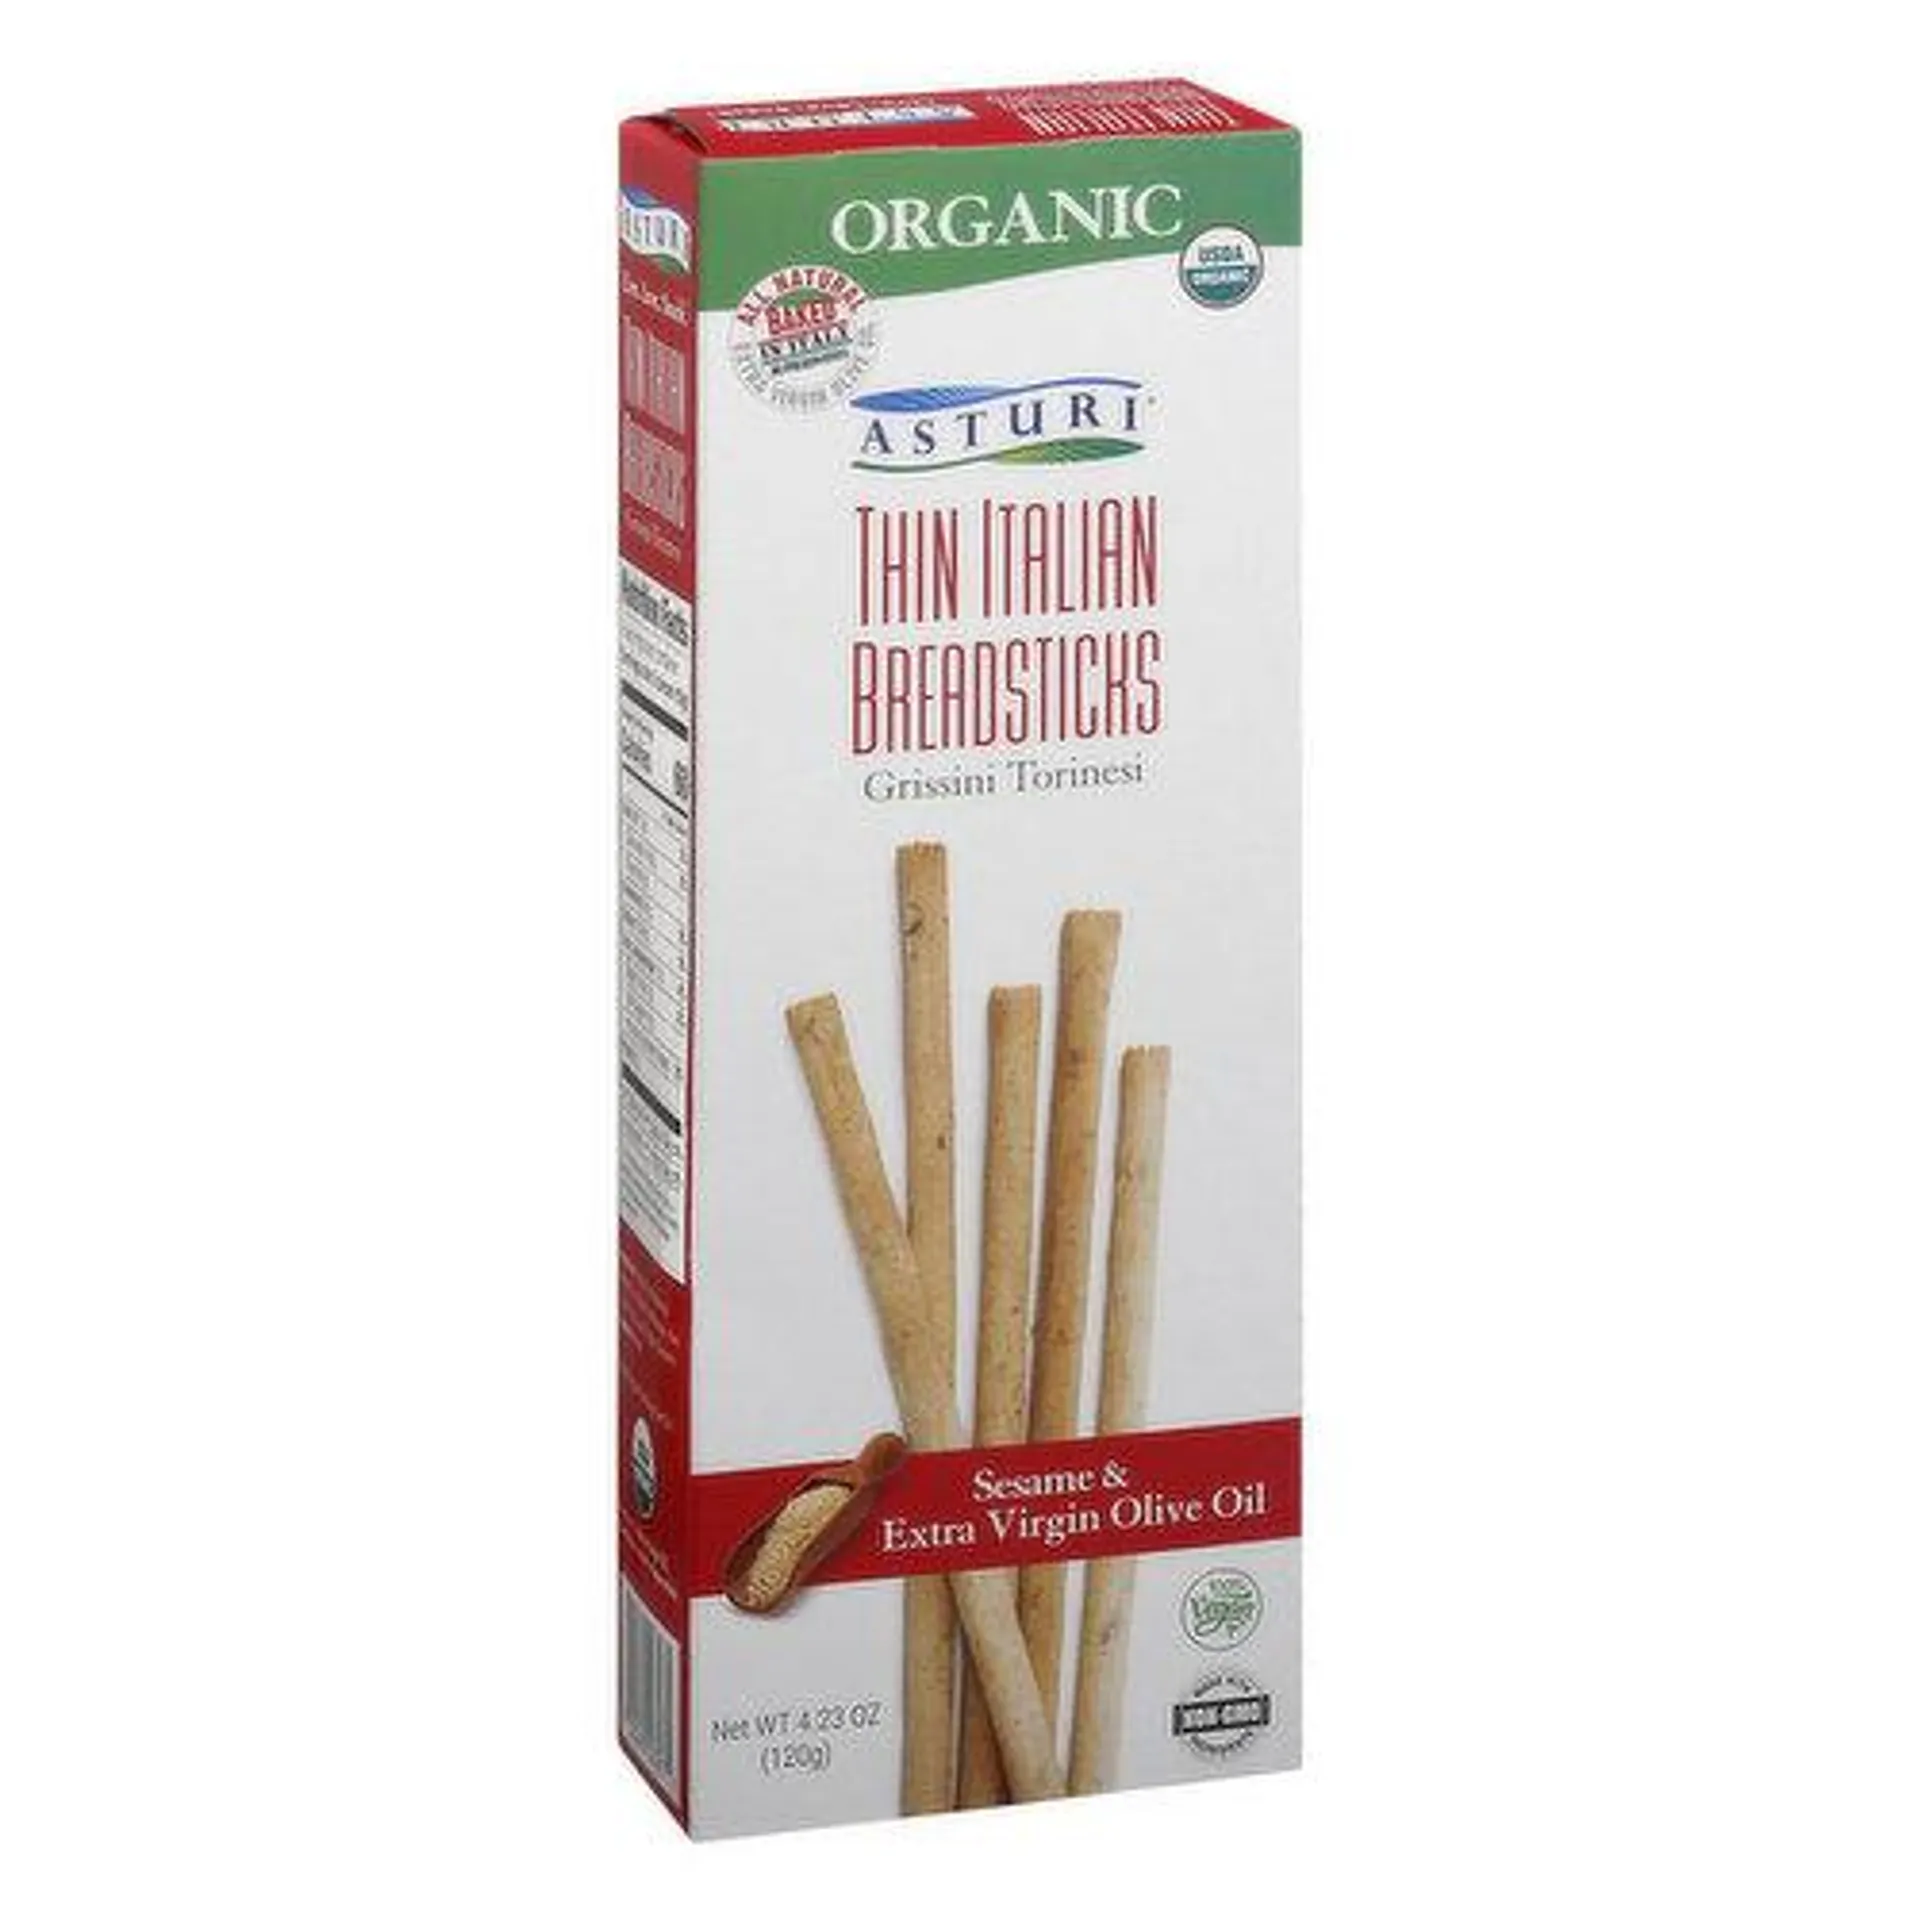 Asturi Breadsticks, Thin Italian - 4.23 Ounce